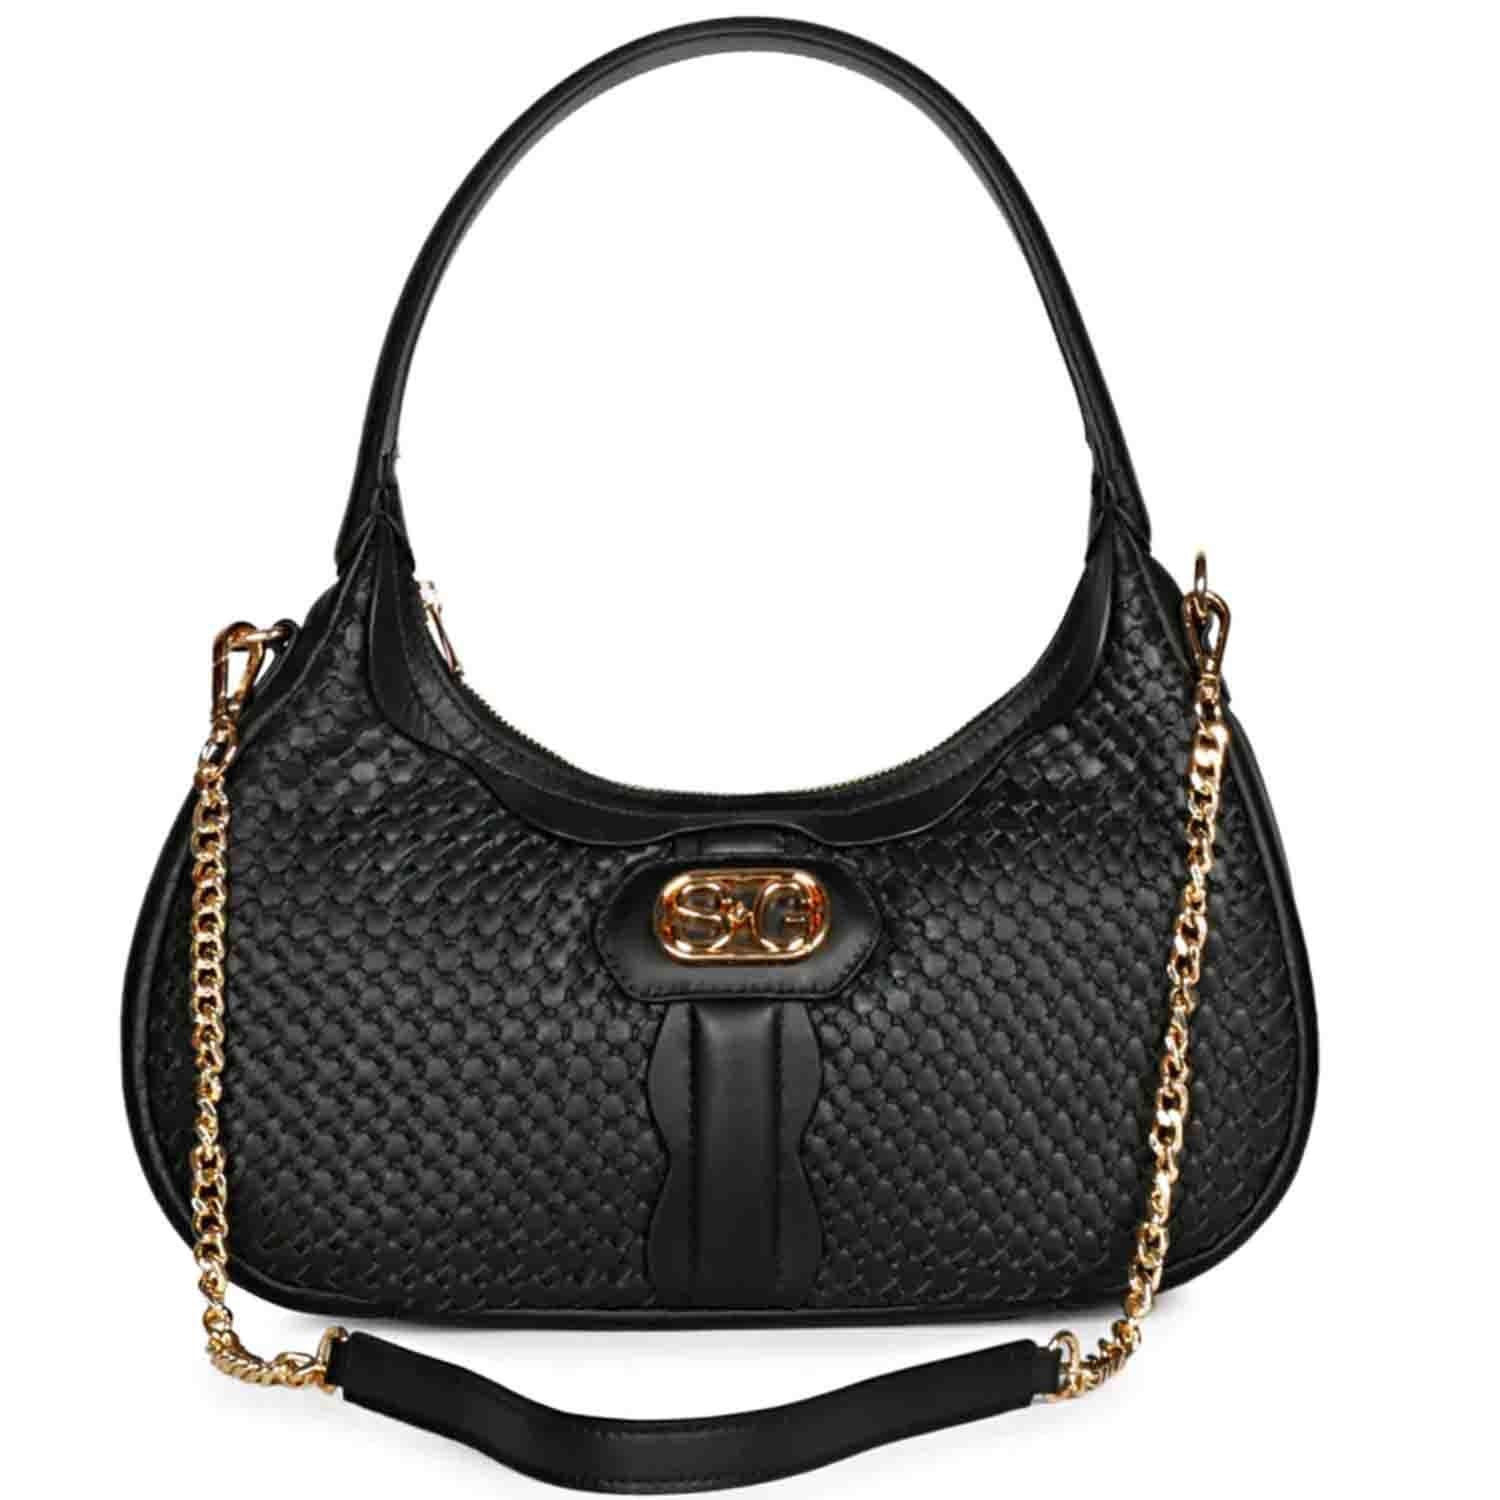 Gucci Mino Hobo Handbag in Very Good Vintage Condition - Etsy